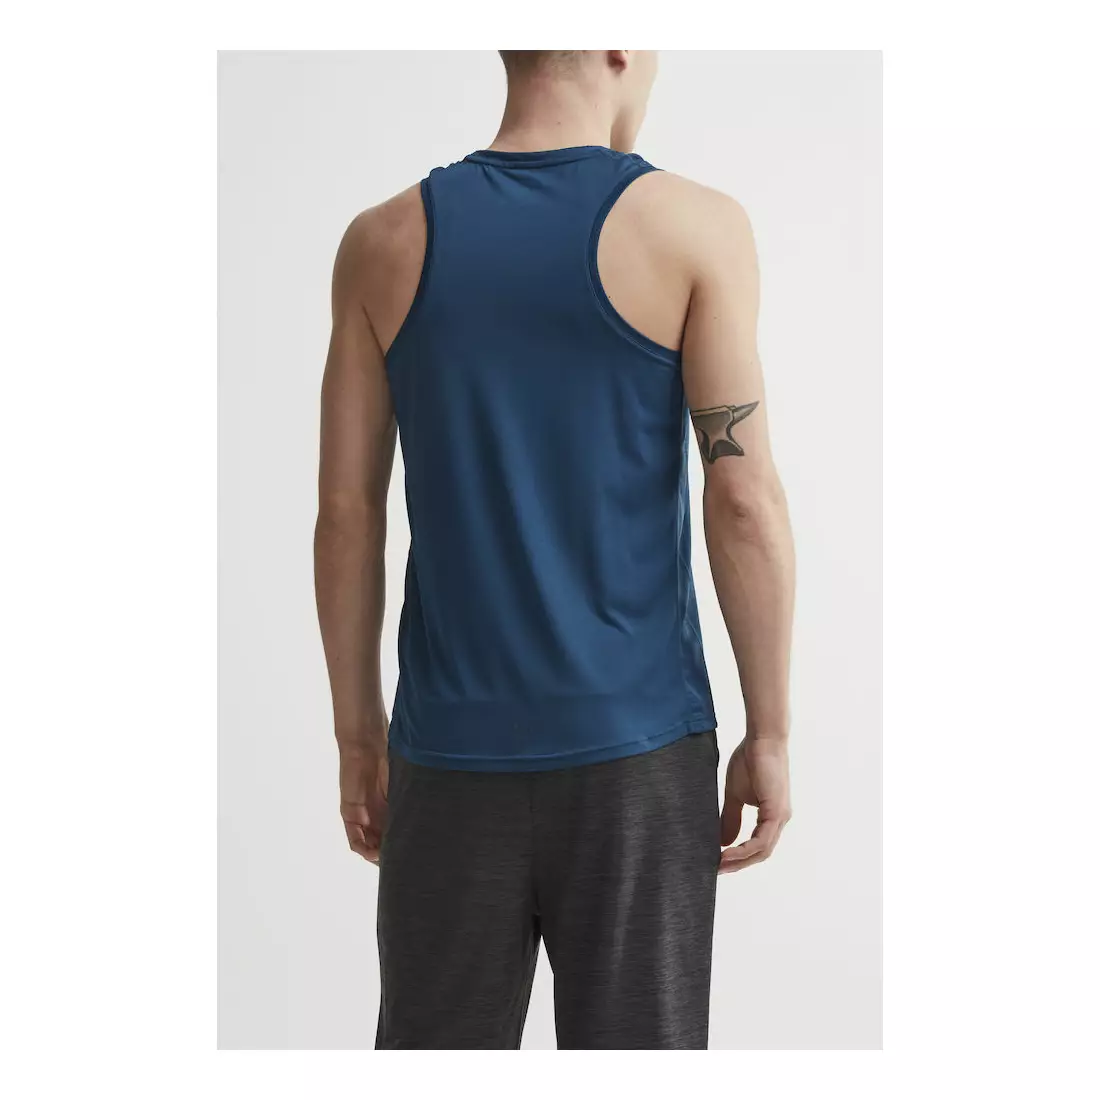 CRAFT EAZE men's running / sleeveless sports shirt blue 1907051-138373